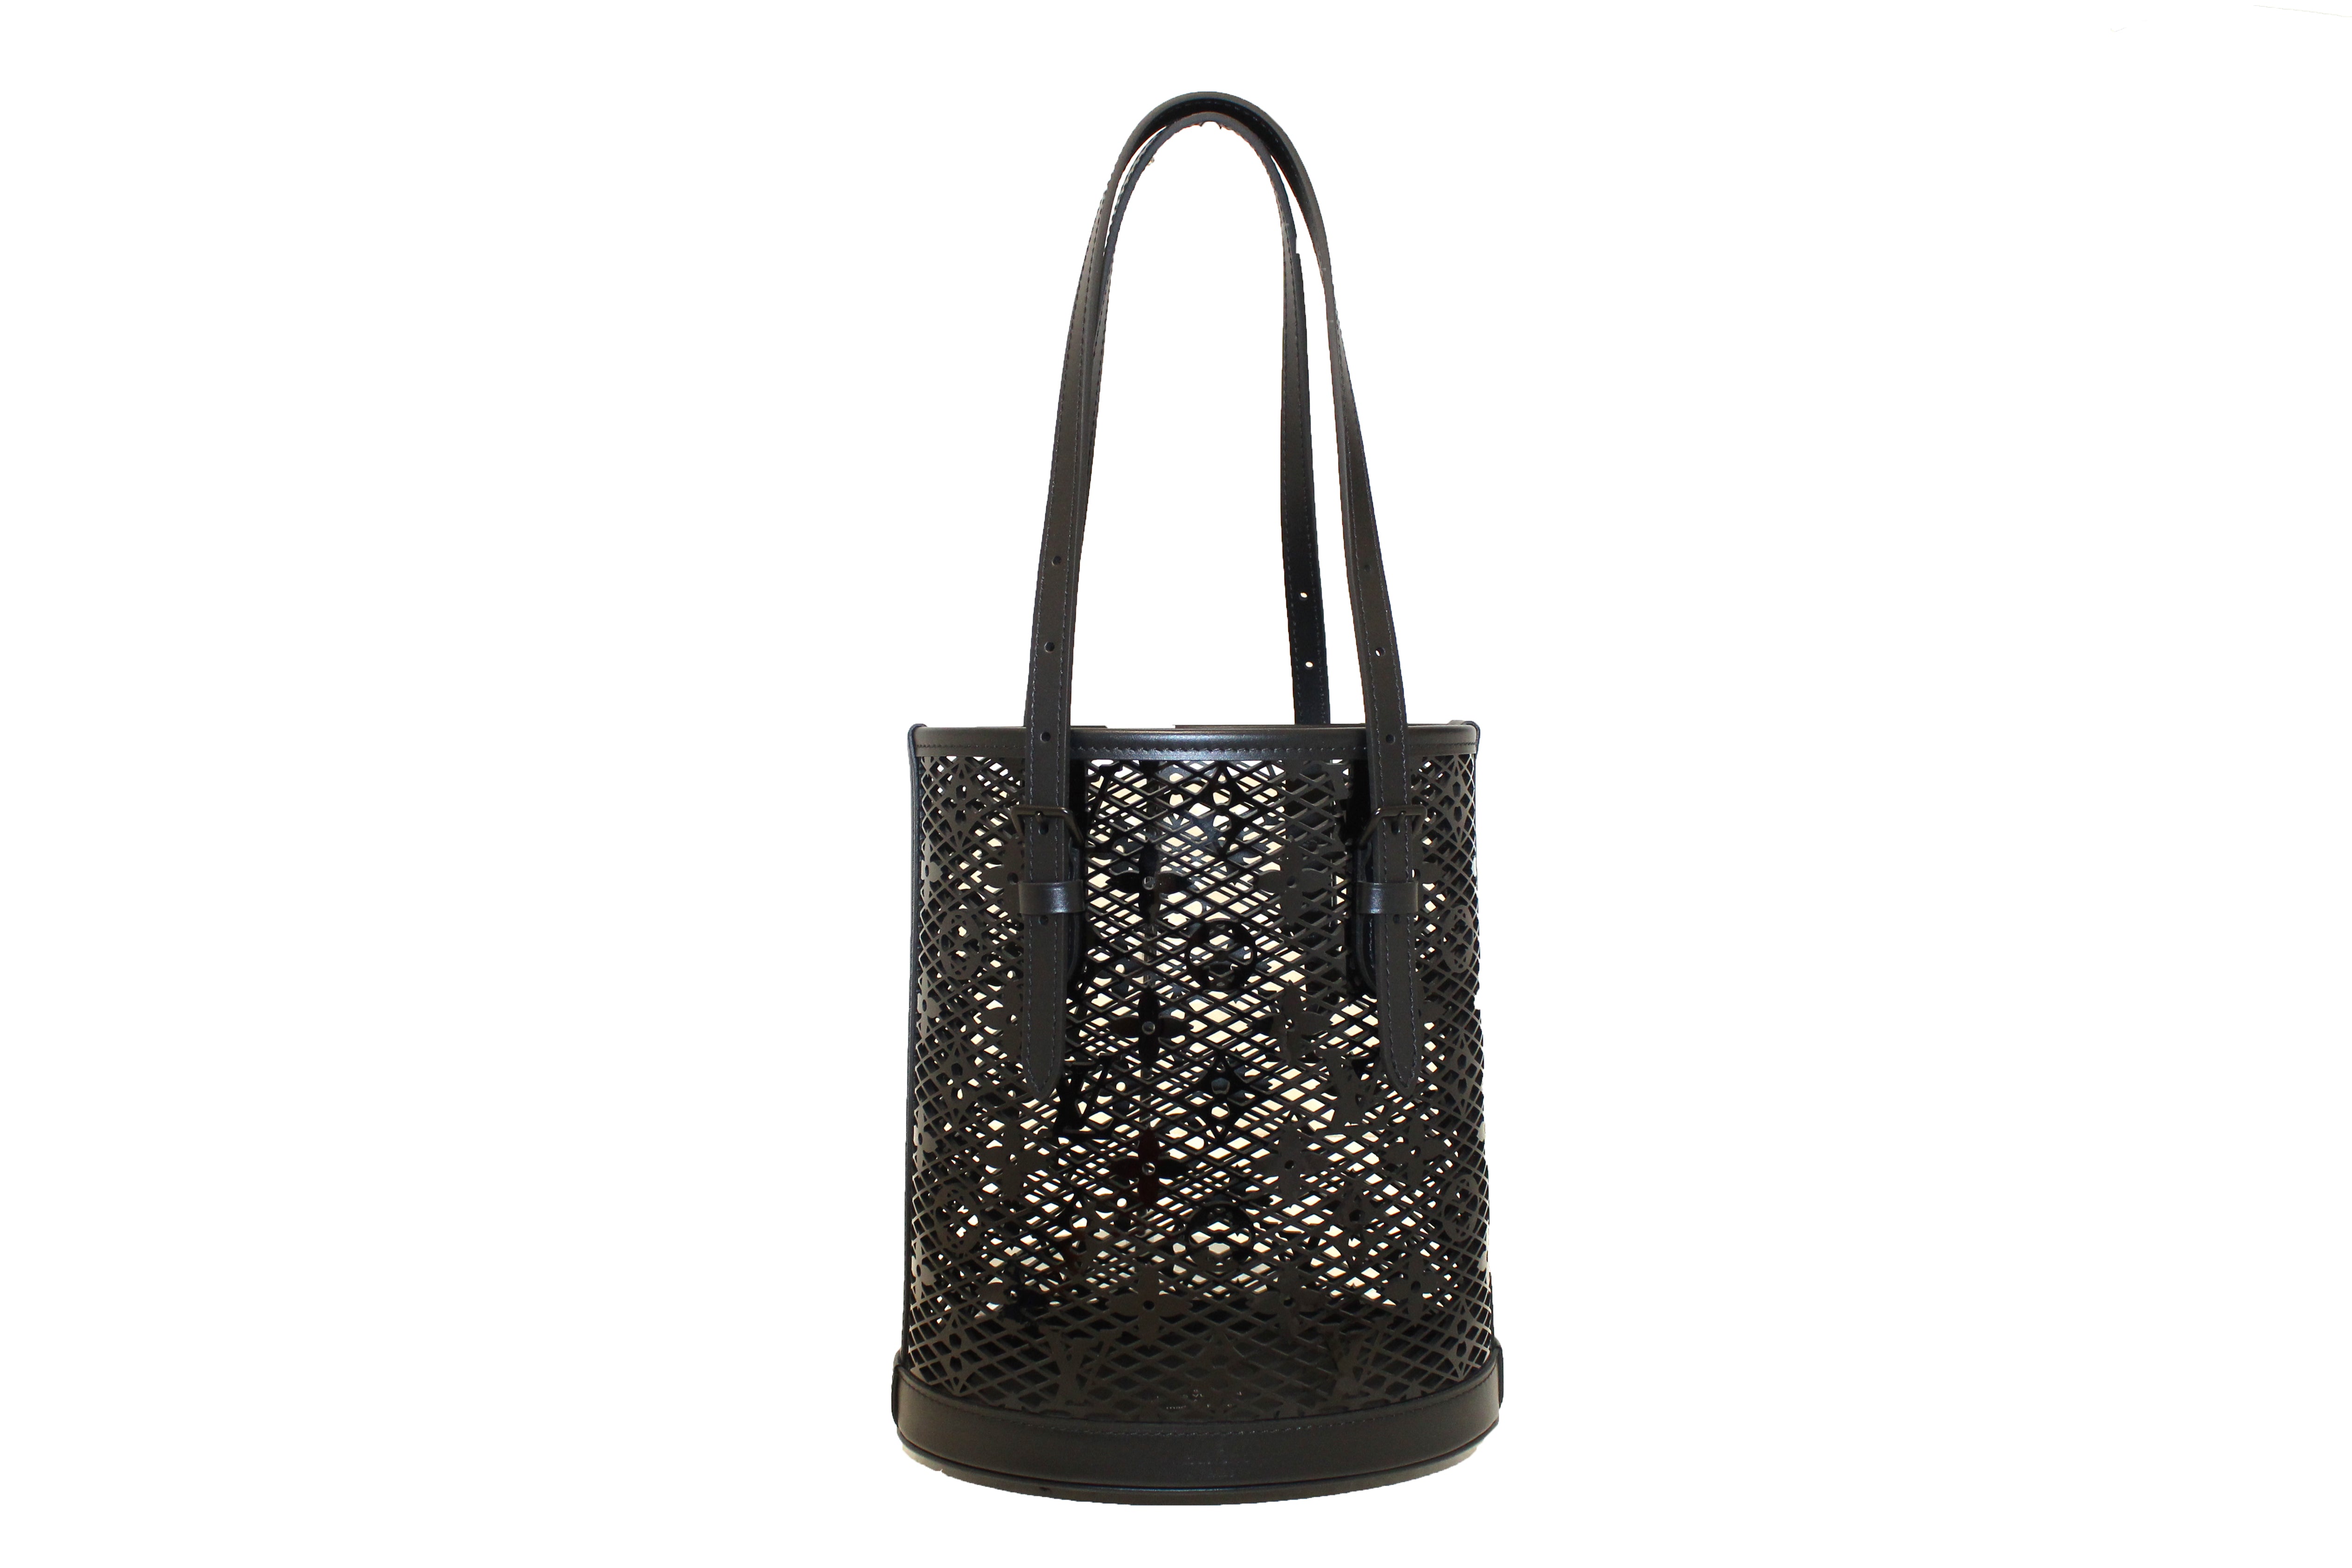 Authentic Louis Vuitton Limited Edition Nicolas Ghesquiere's Monogram Lace Black Patent Leather Bucket Shoulder Bag